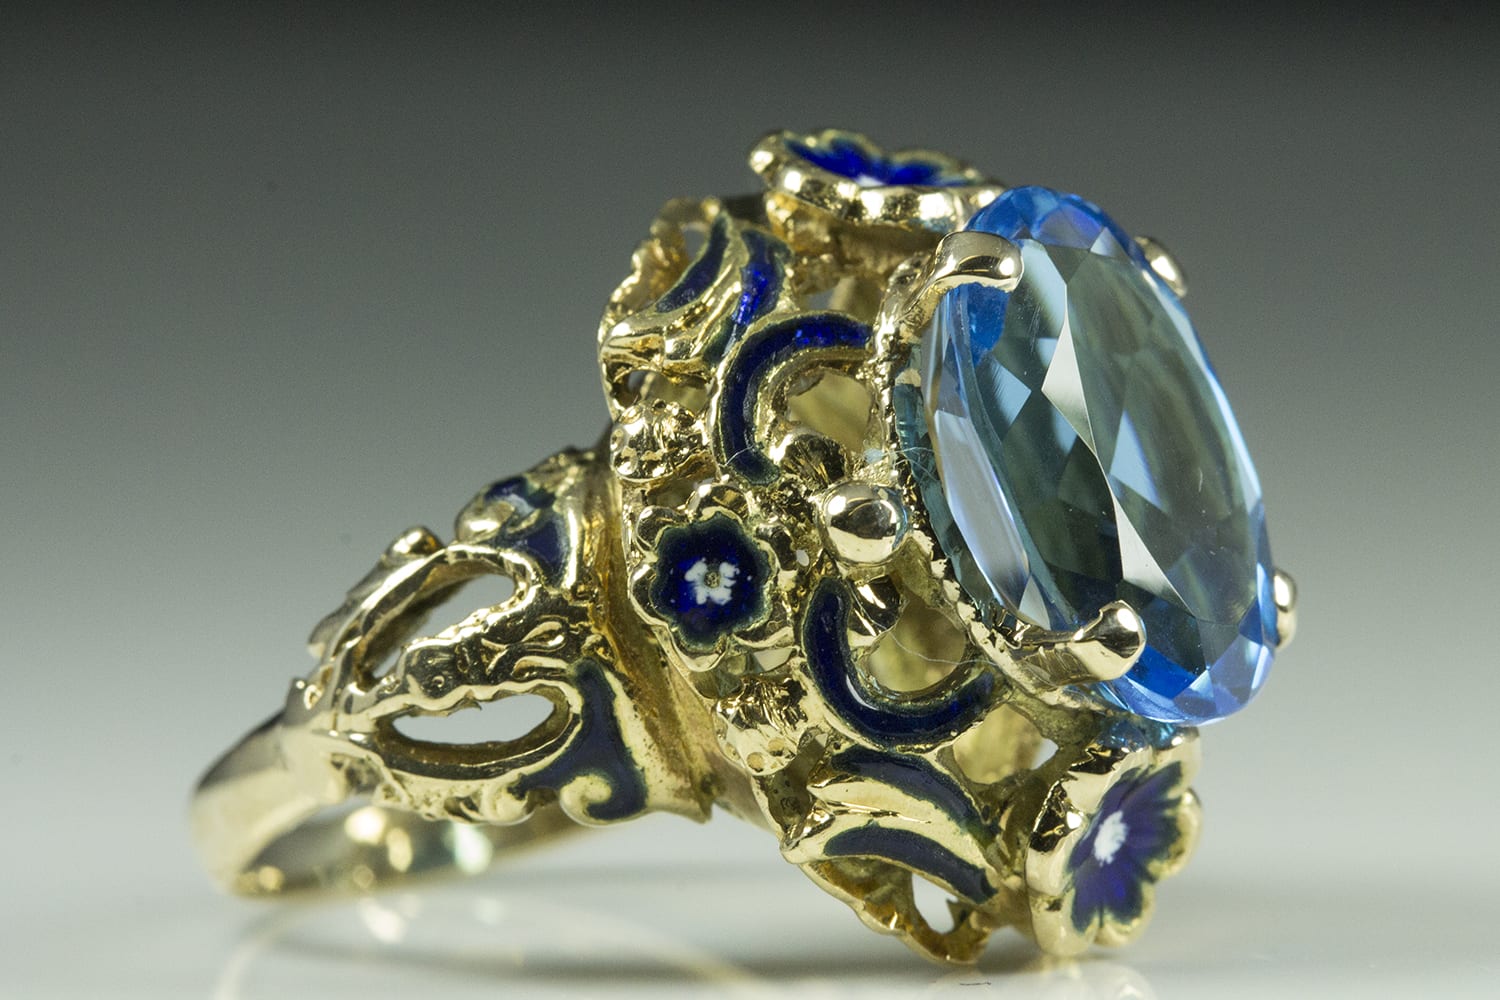 Lapis Lazuli Gemstone Ring Antique Brass Statement Ring Blue Gold Rock Ring adjustable Rings 12mm Round Gemstone ring Natural Stone ring